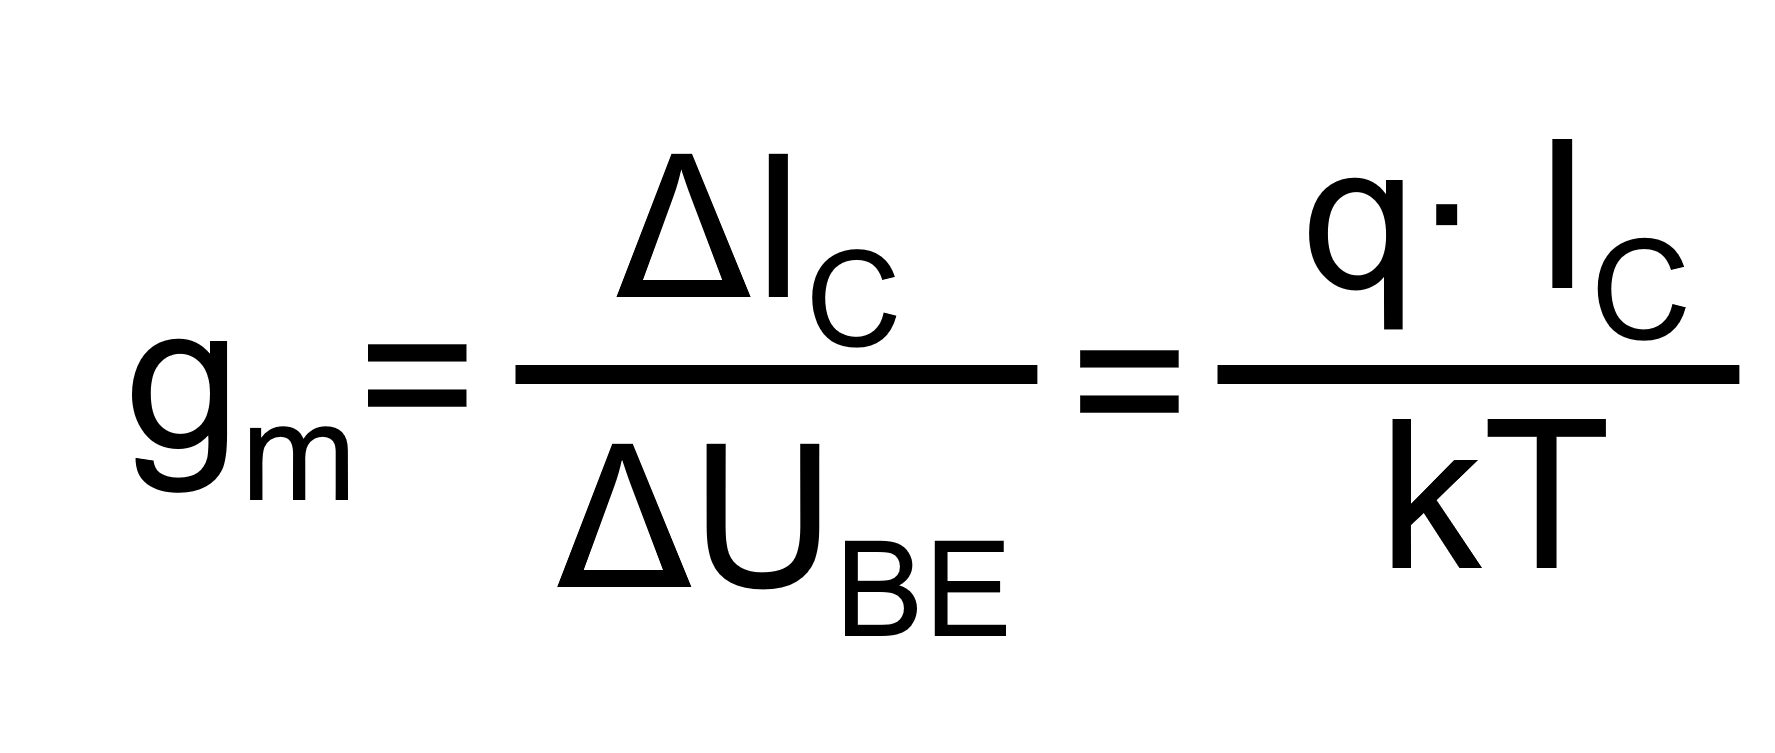 Das Bild zeigt die Formel zur Berechnung der Steilheit im Kleinsignal-Ersatzschaltbild des Bipolartranistor